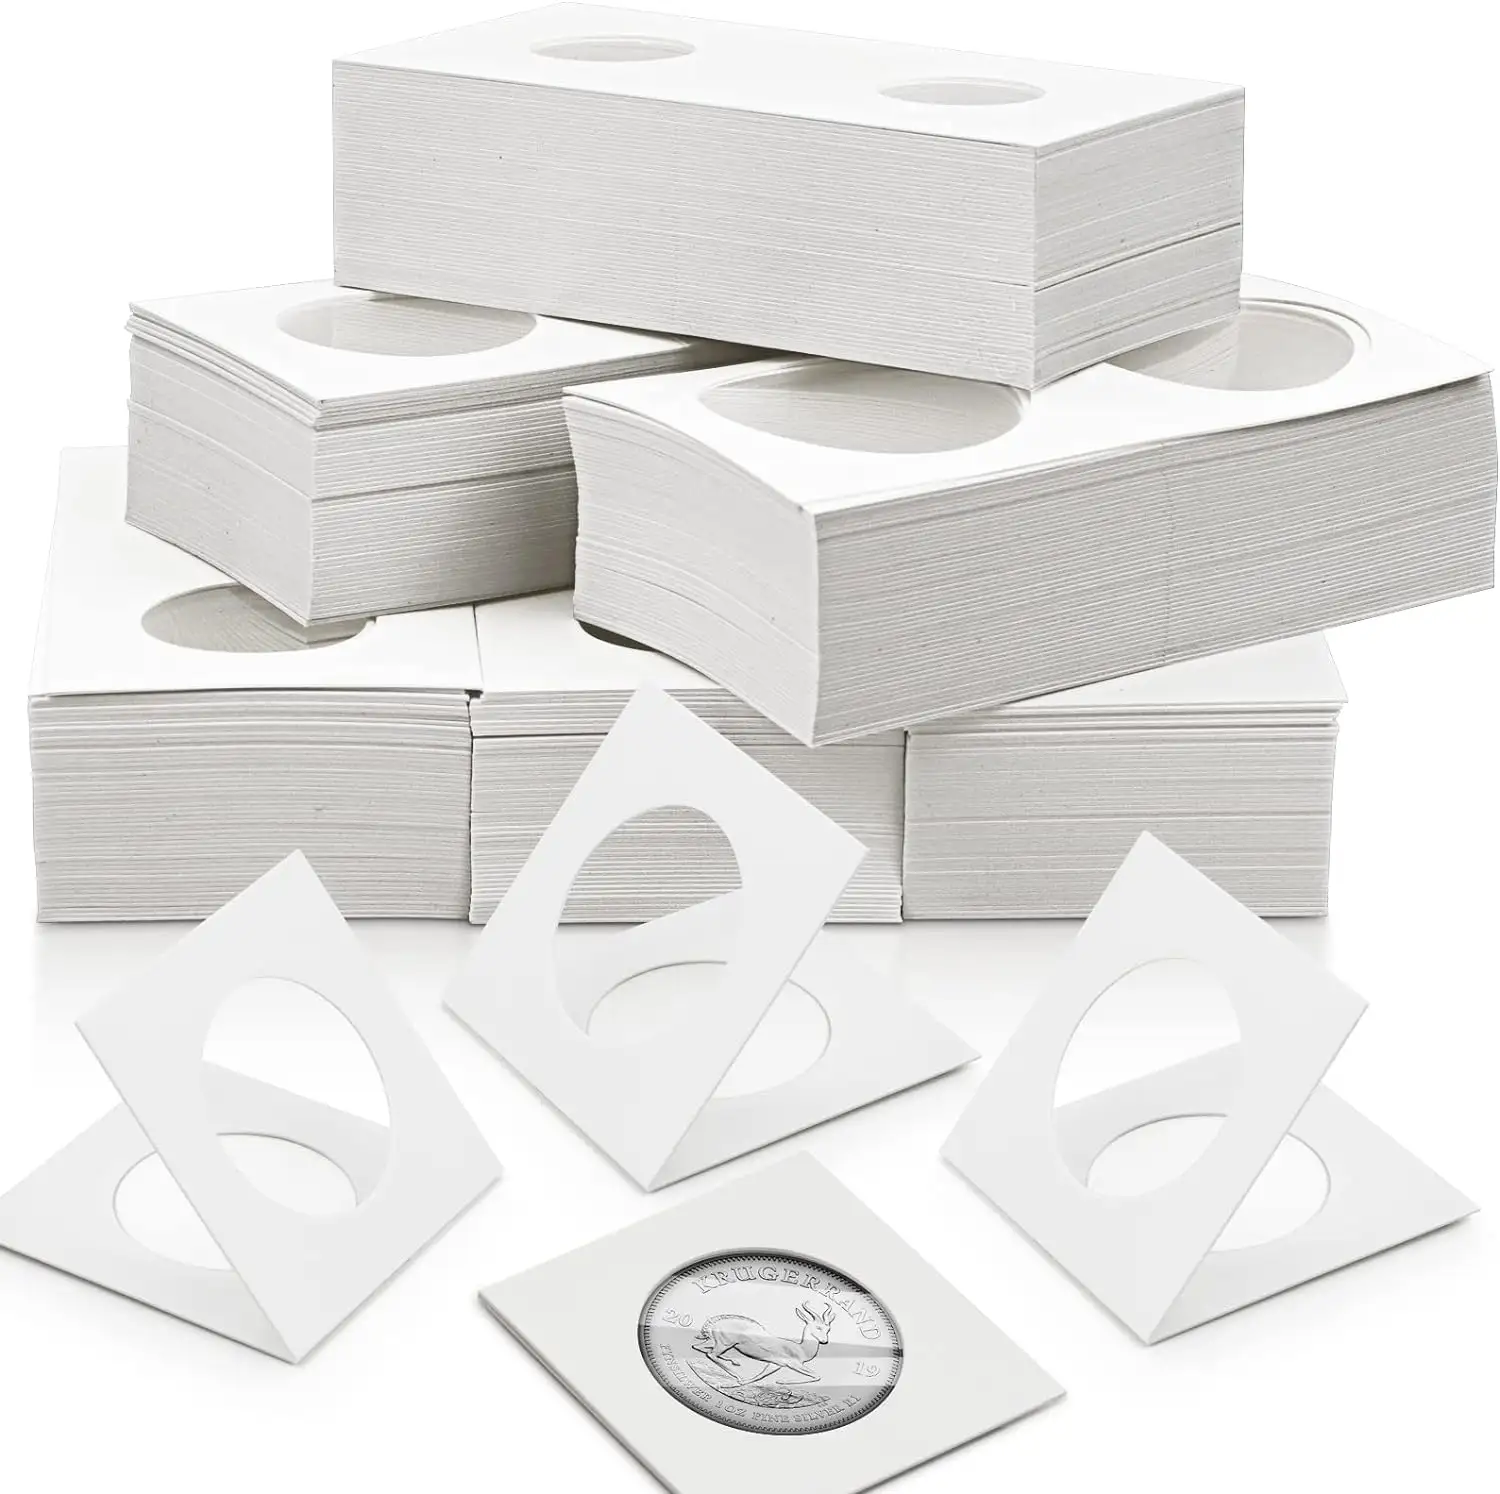 Özel sikke tutucu Flip karton sikke sahipleri çevirir karton koruma sikke zarflar koleksiyonu cep